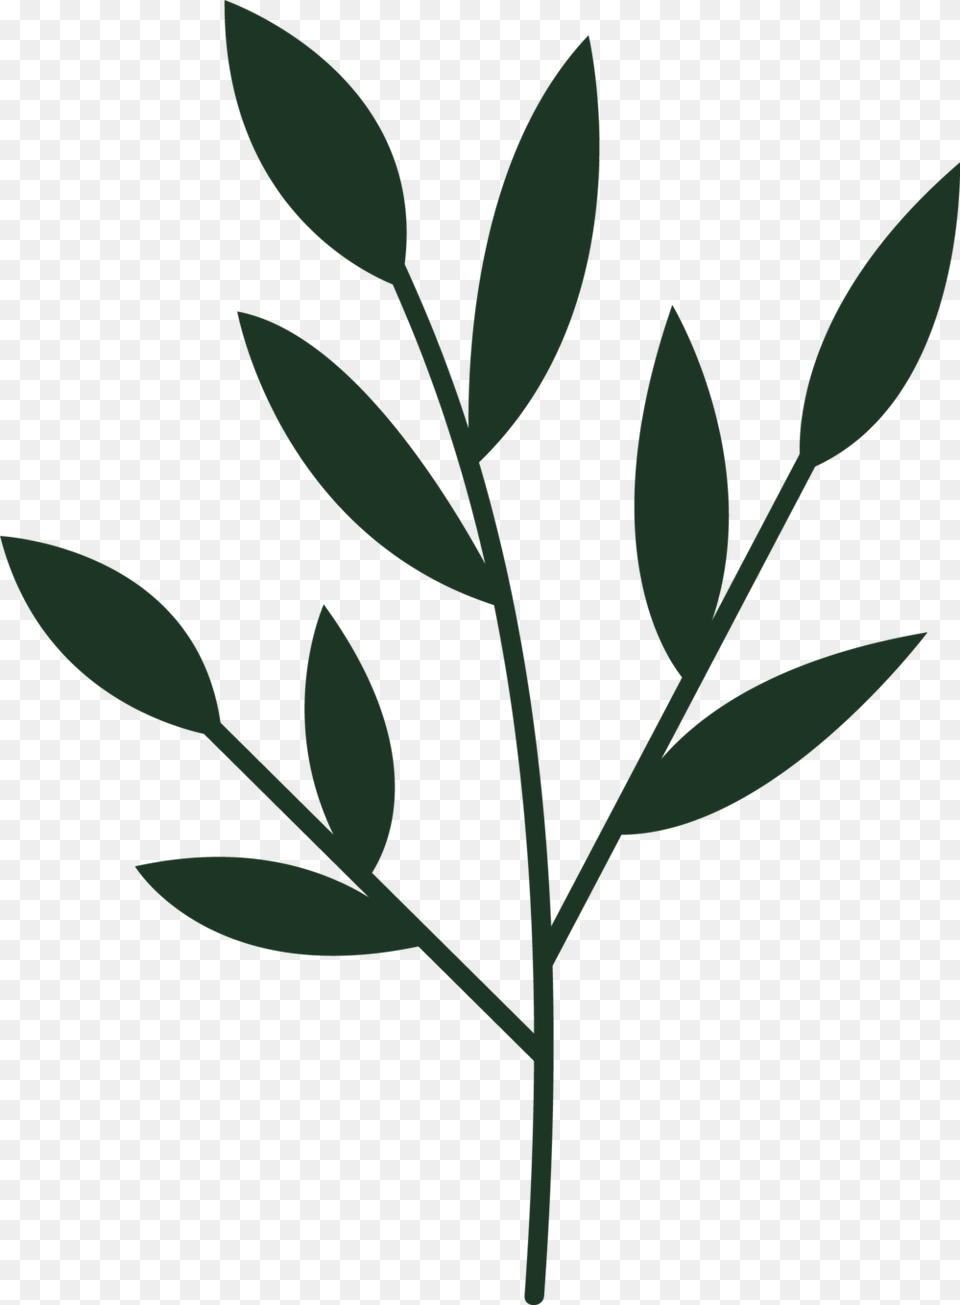 Green Plant, Herbs, Herbal, Leaf, Astragalus Png Image